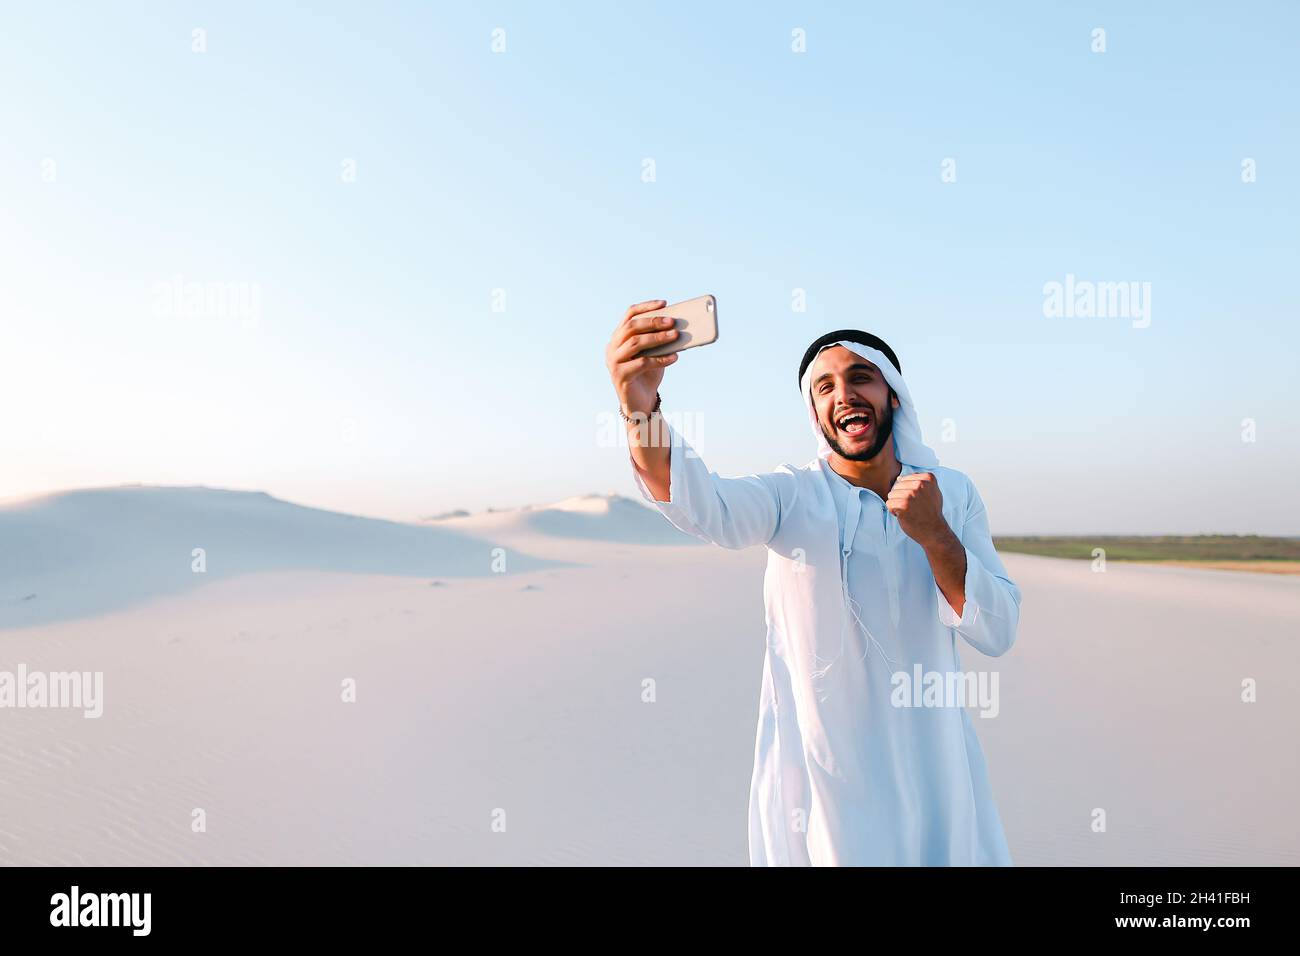 Portrait des arabischen scheich-Mannes mit Gadget, das am Sommertag in skype gegen den blauen Himmel kommuniziert. Stockfoto